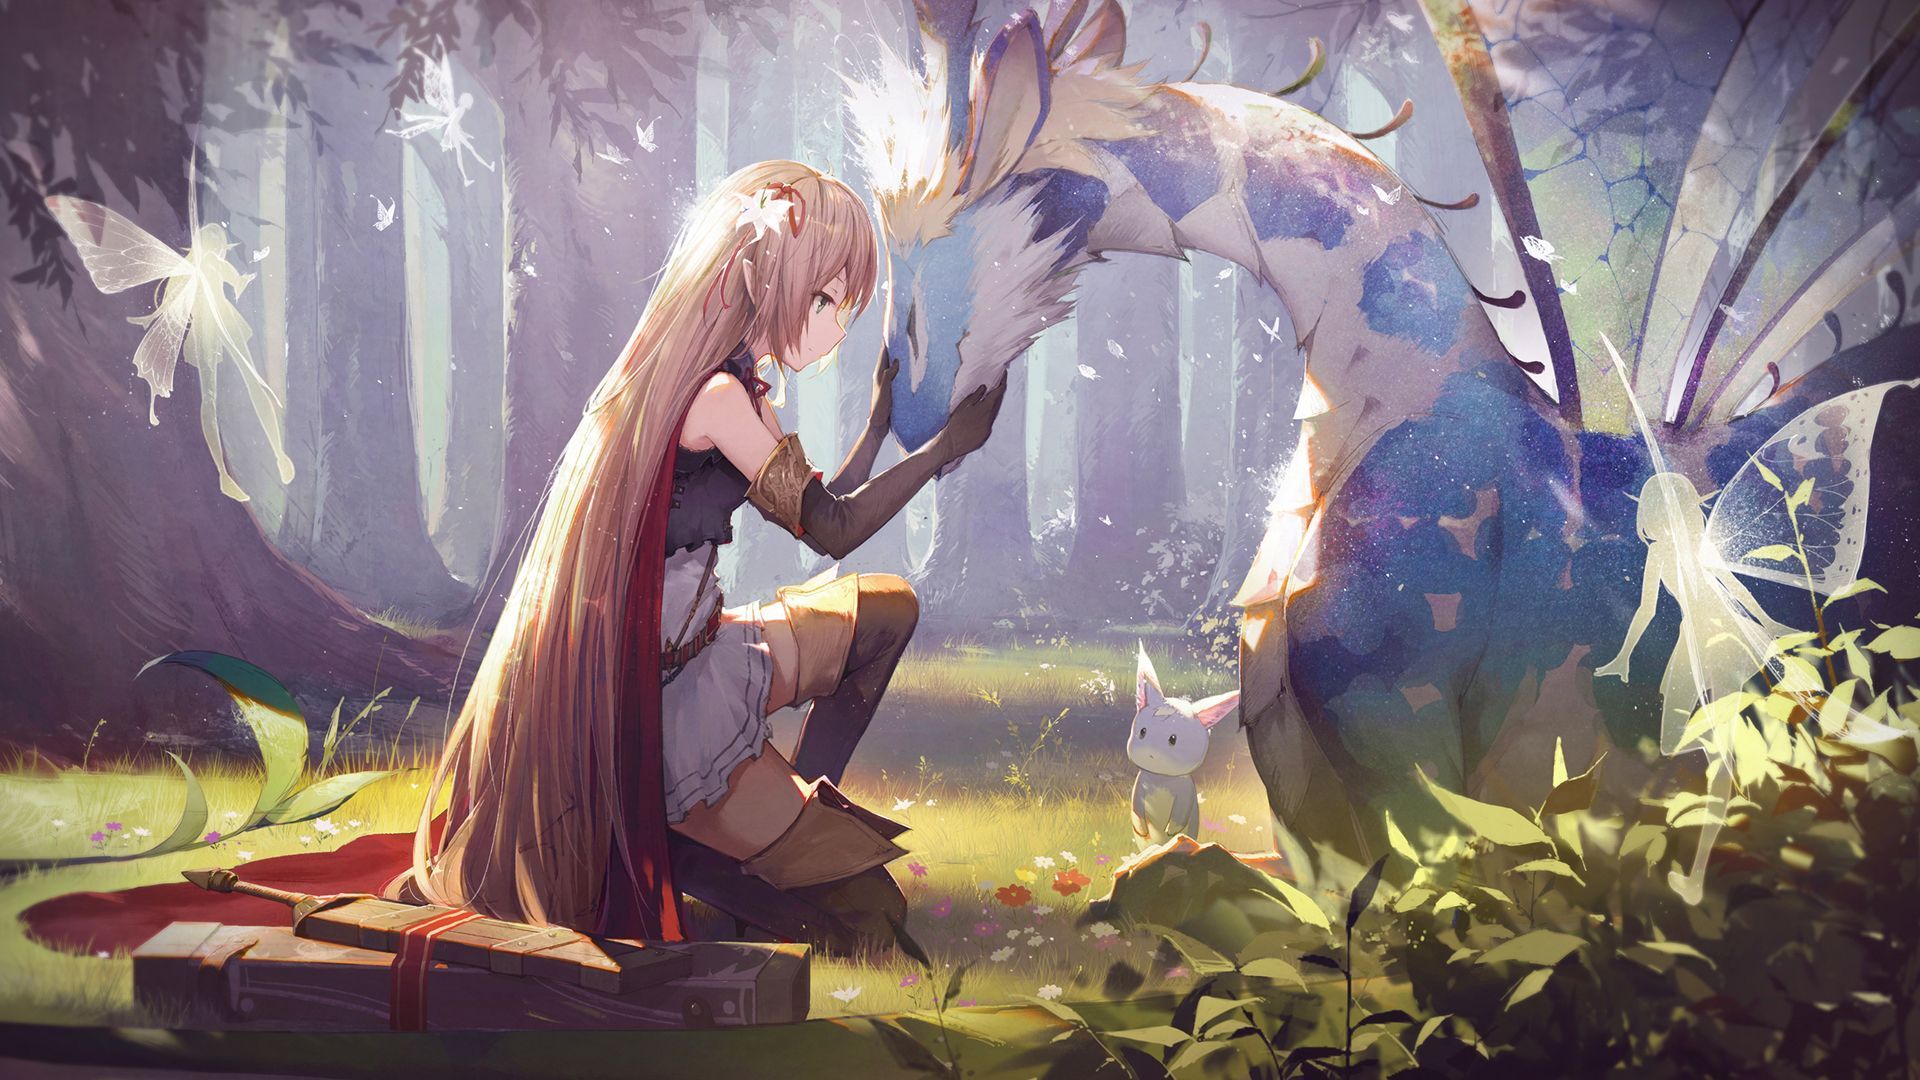 Anime Girl and Dragon Wallpaper Free Anime Girl and Dragon Background